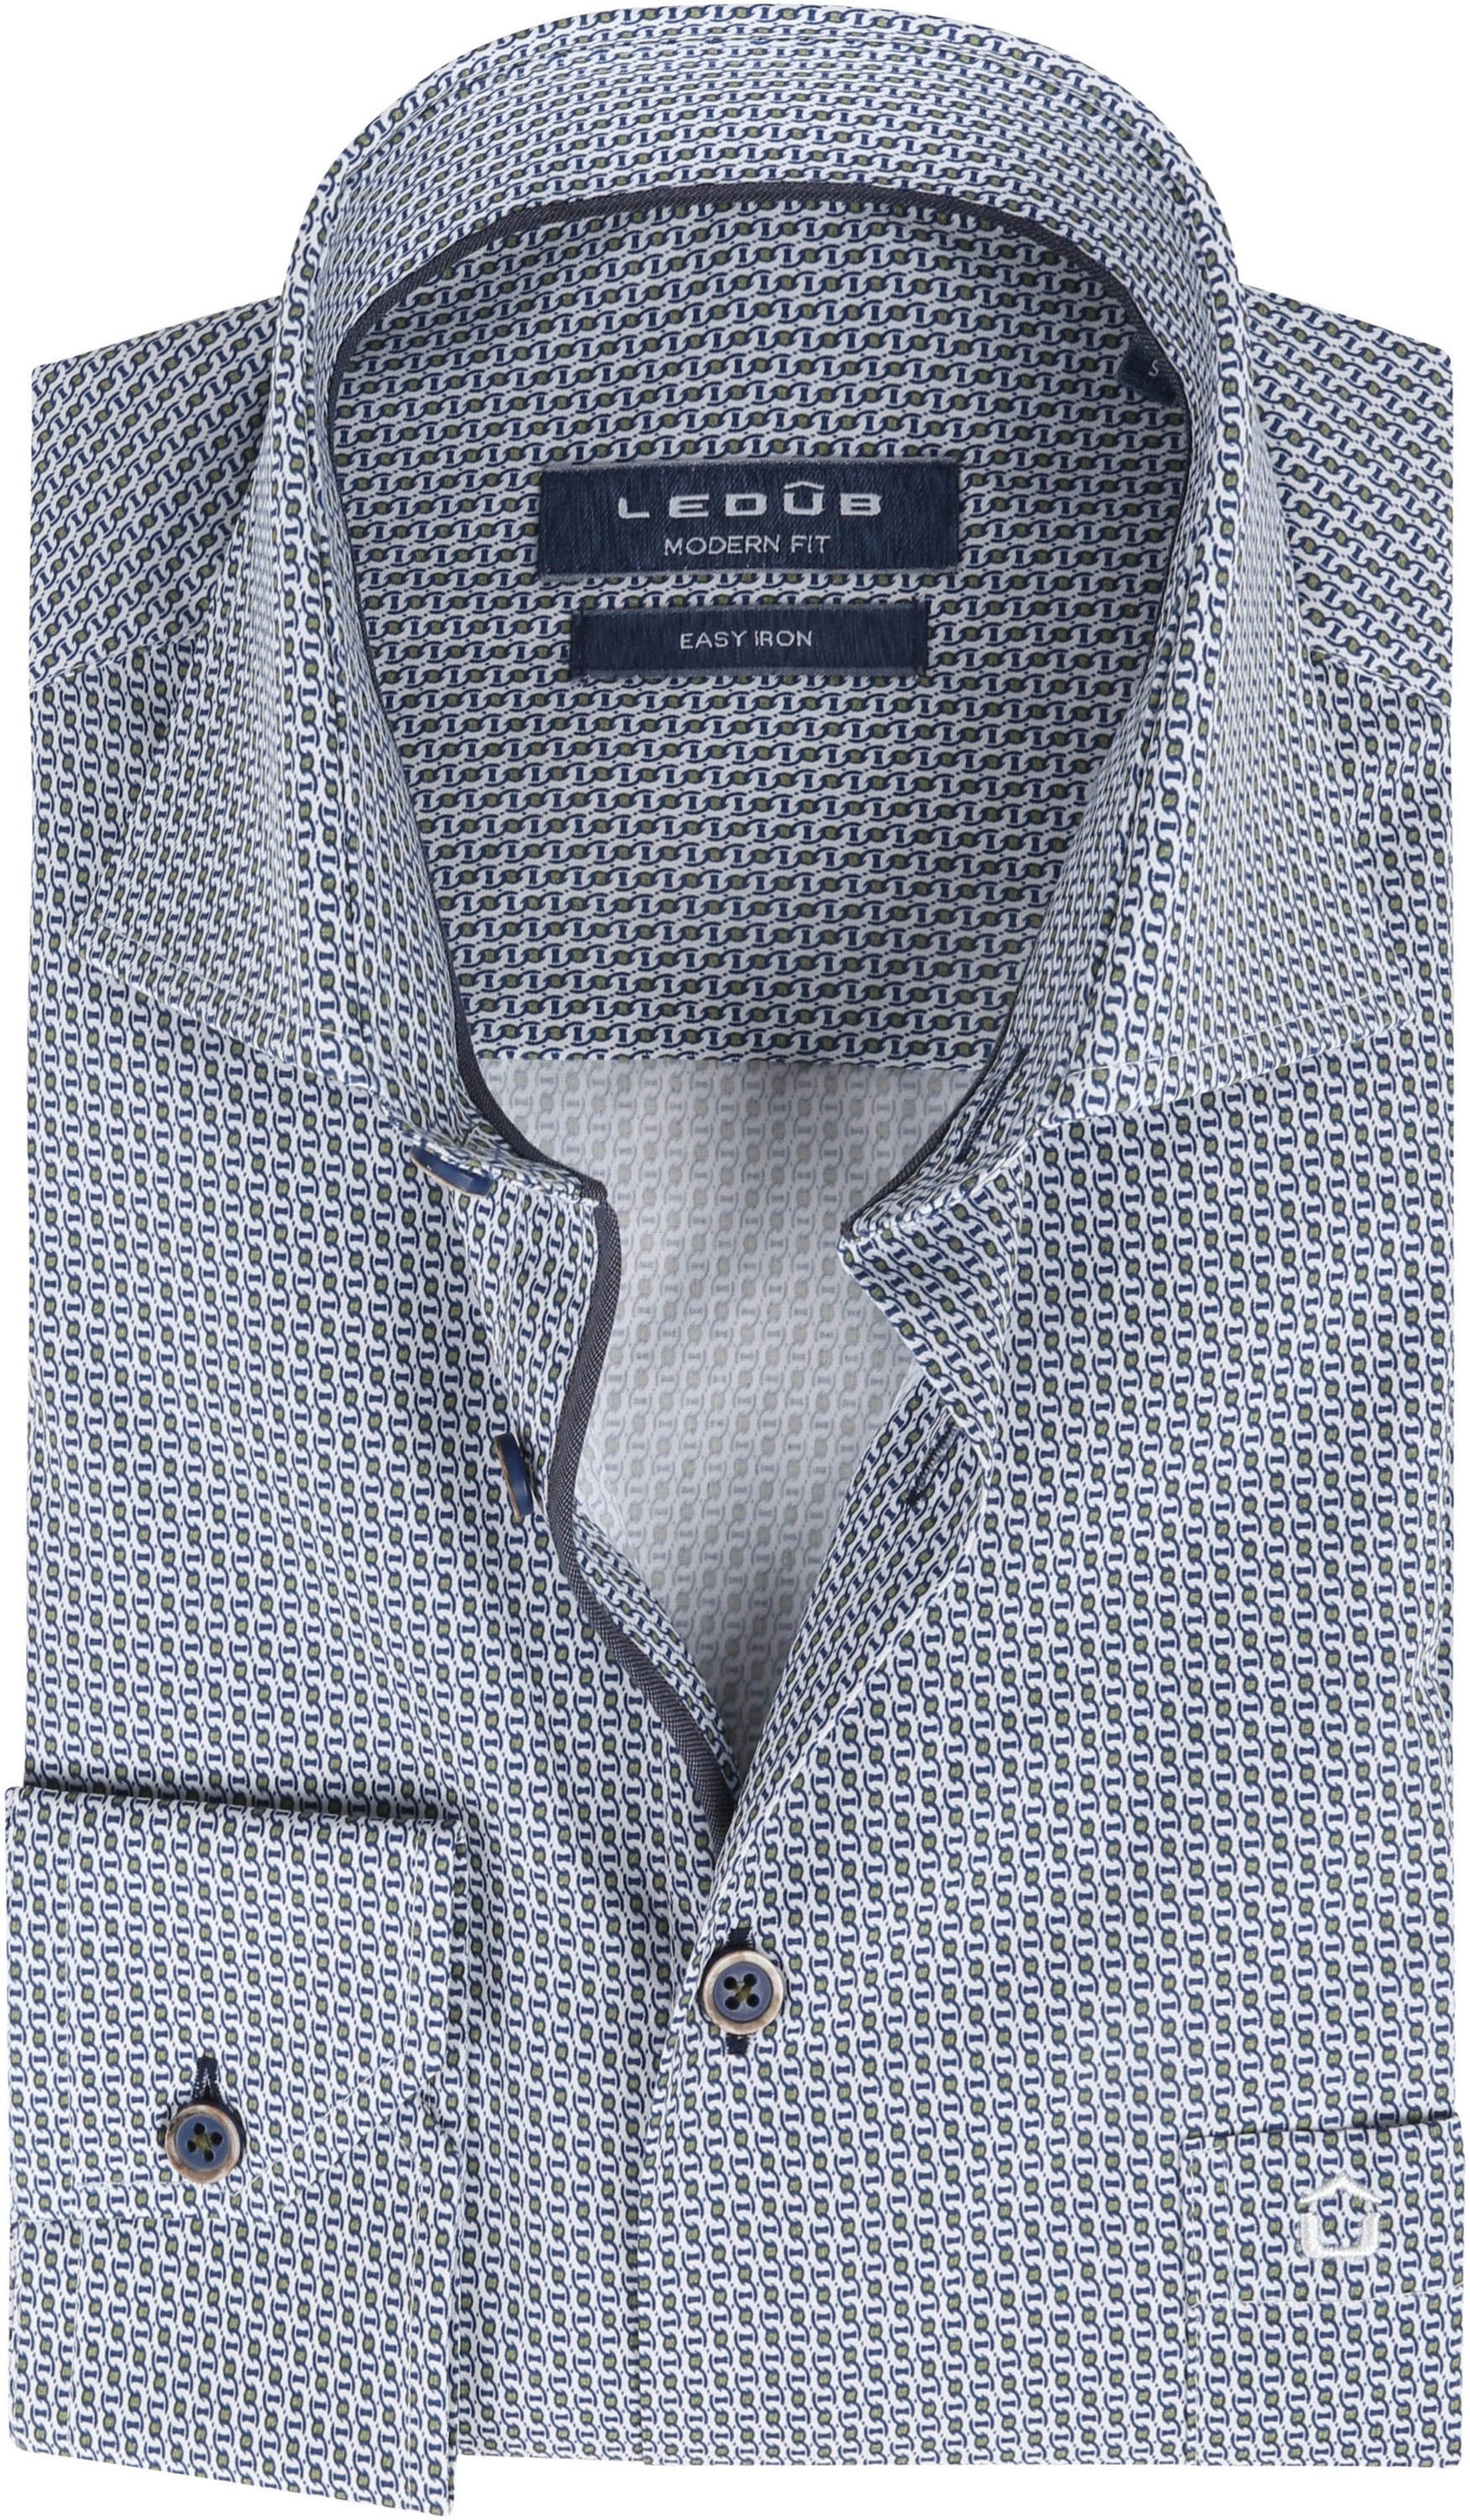 Ledub Cotton Shirt Print Pattern Navy Blue Green White size 15